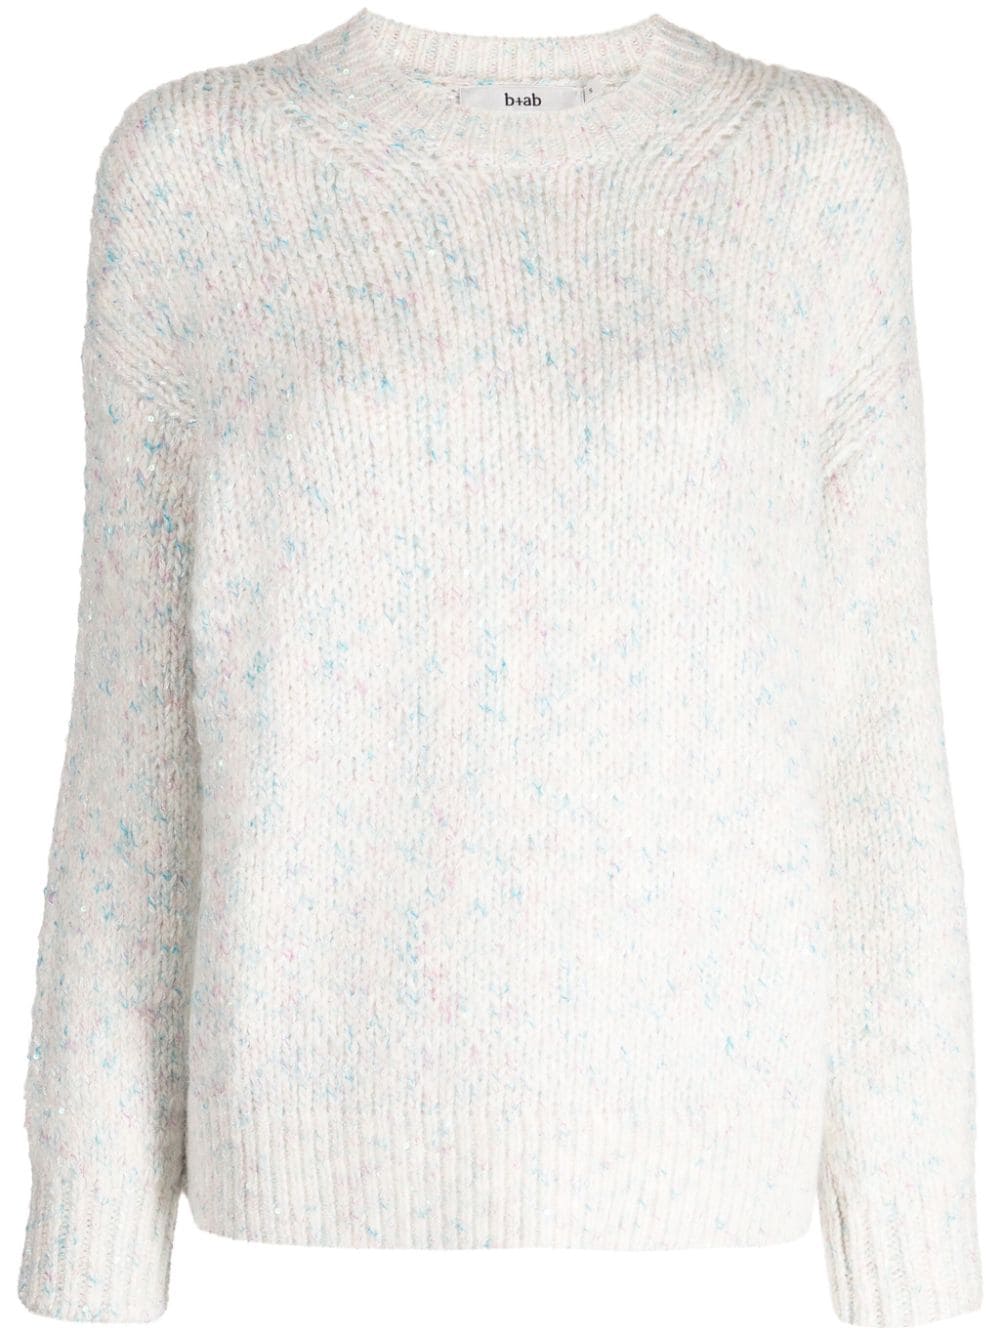 mélange-effect knitted jumper